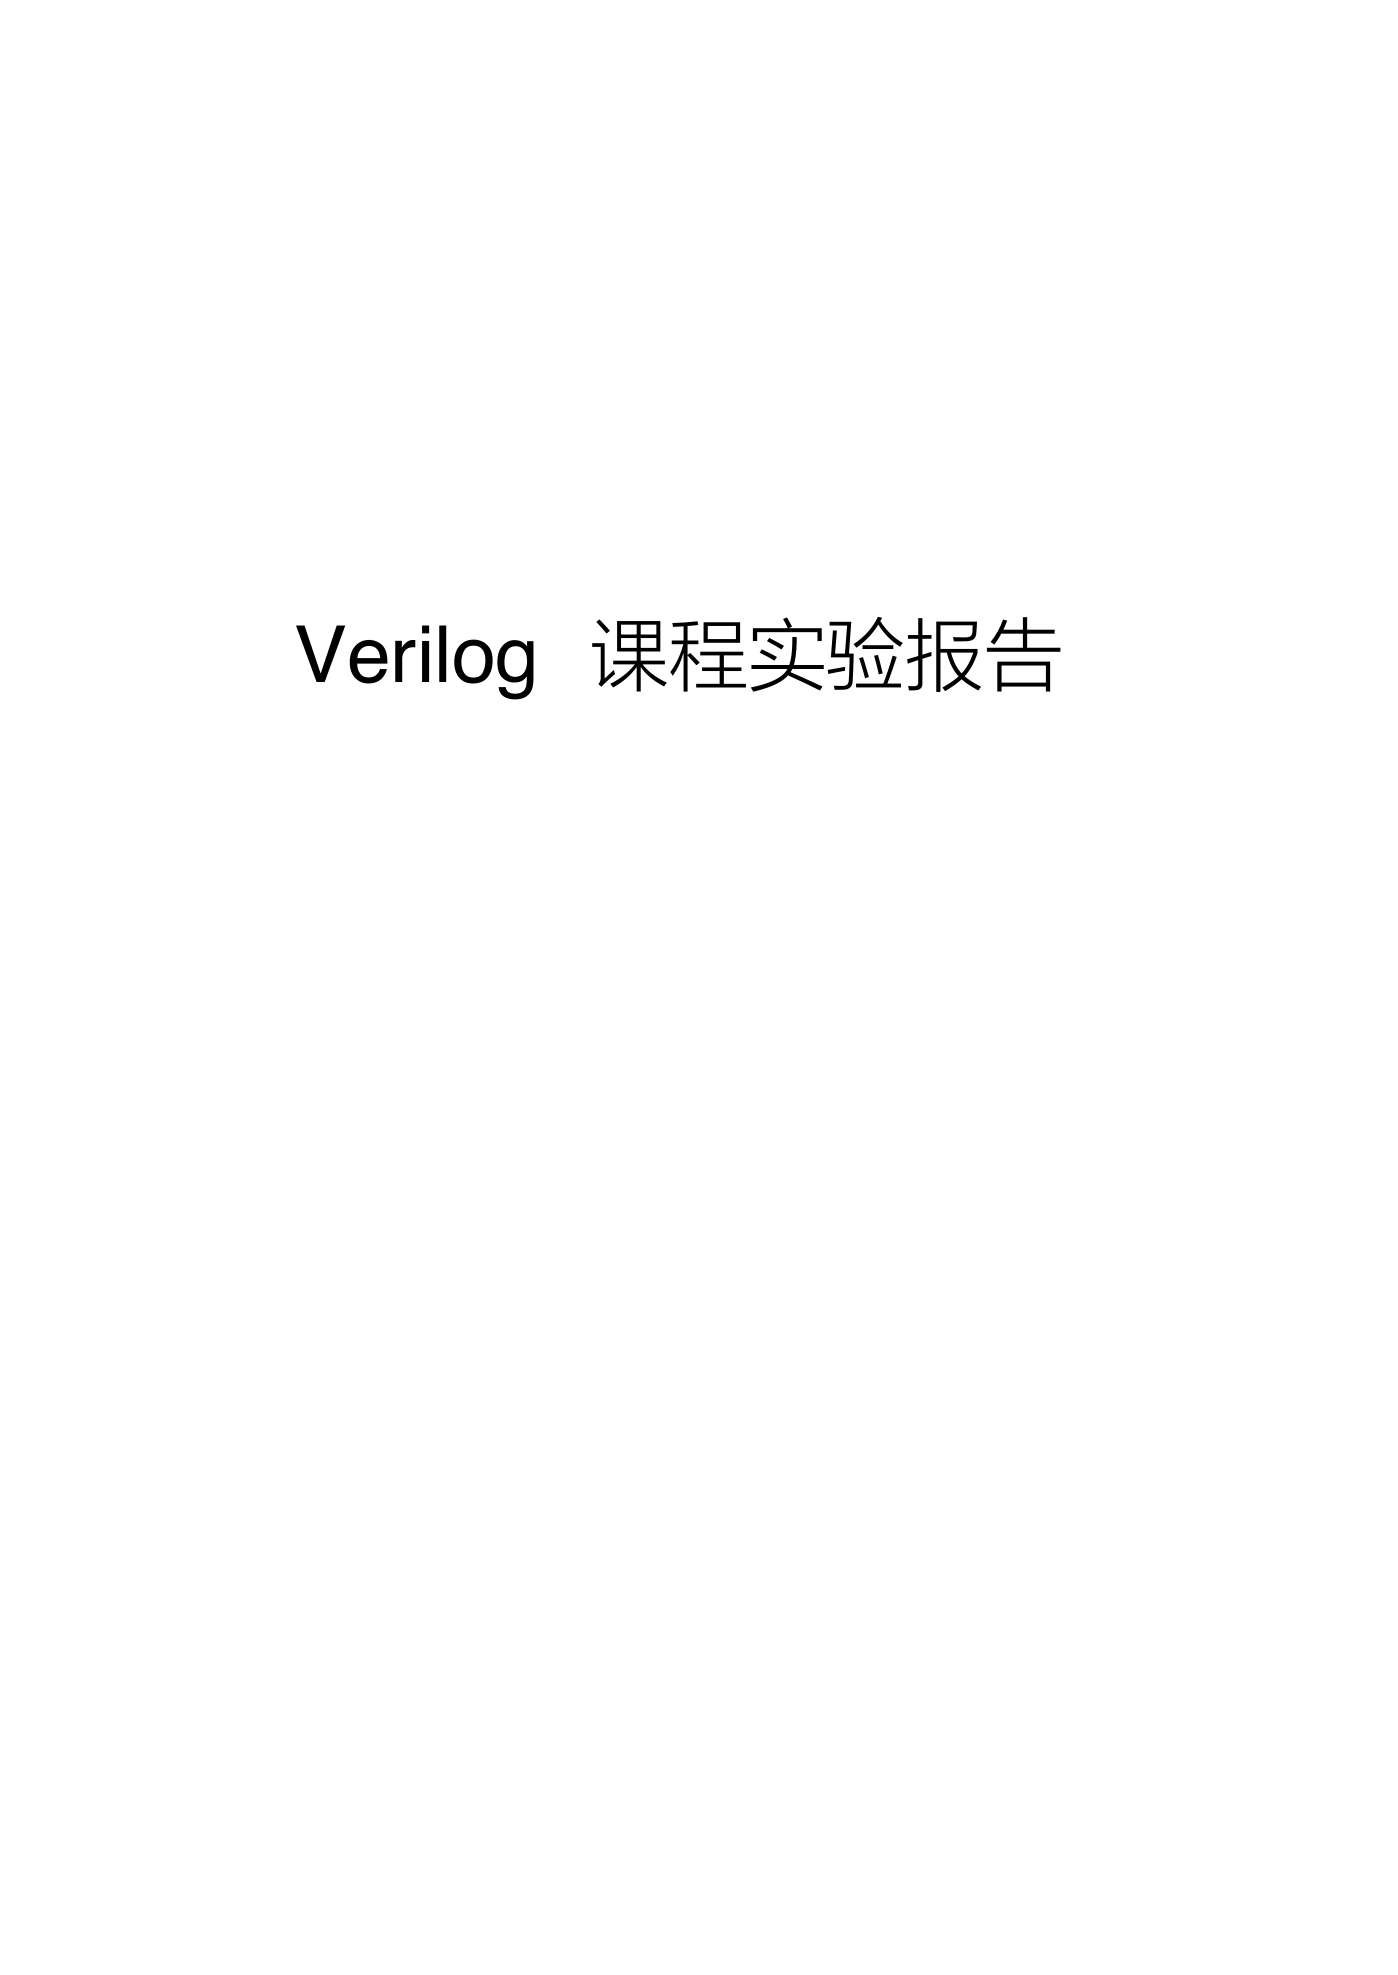 用verilog编写16位加法器乘法器自动售货机.pdf